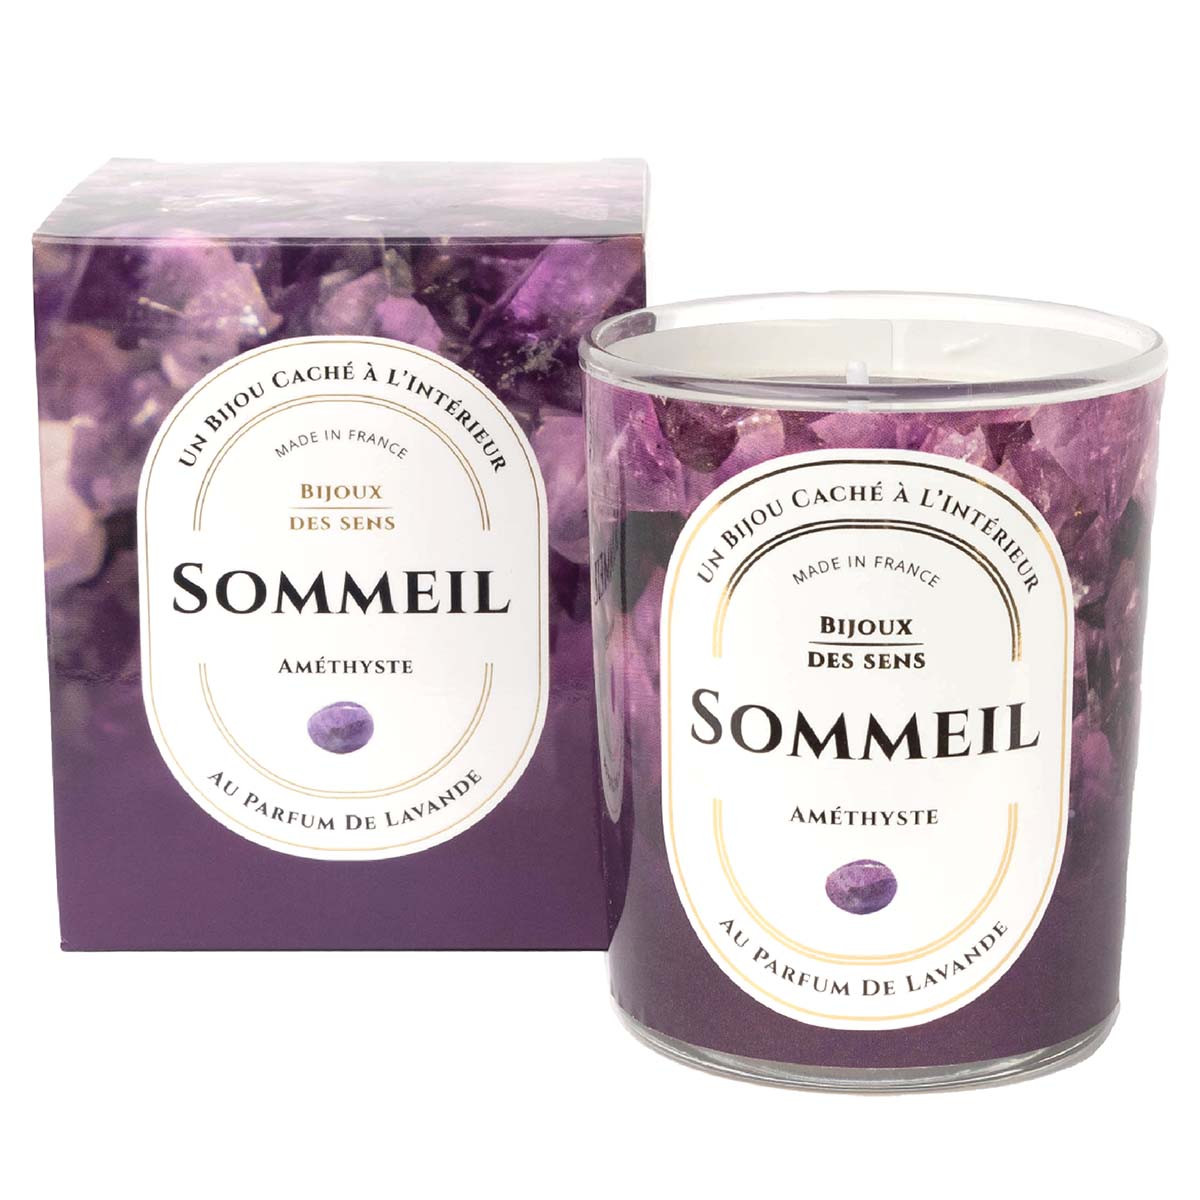 Sommeil - Bougie Fragrance Lavande et Collier Argenté Améthyste